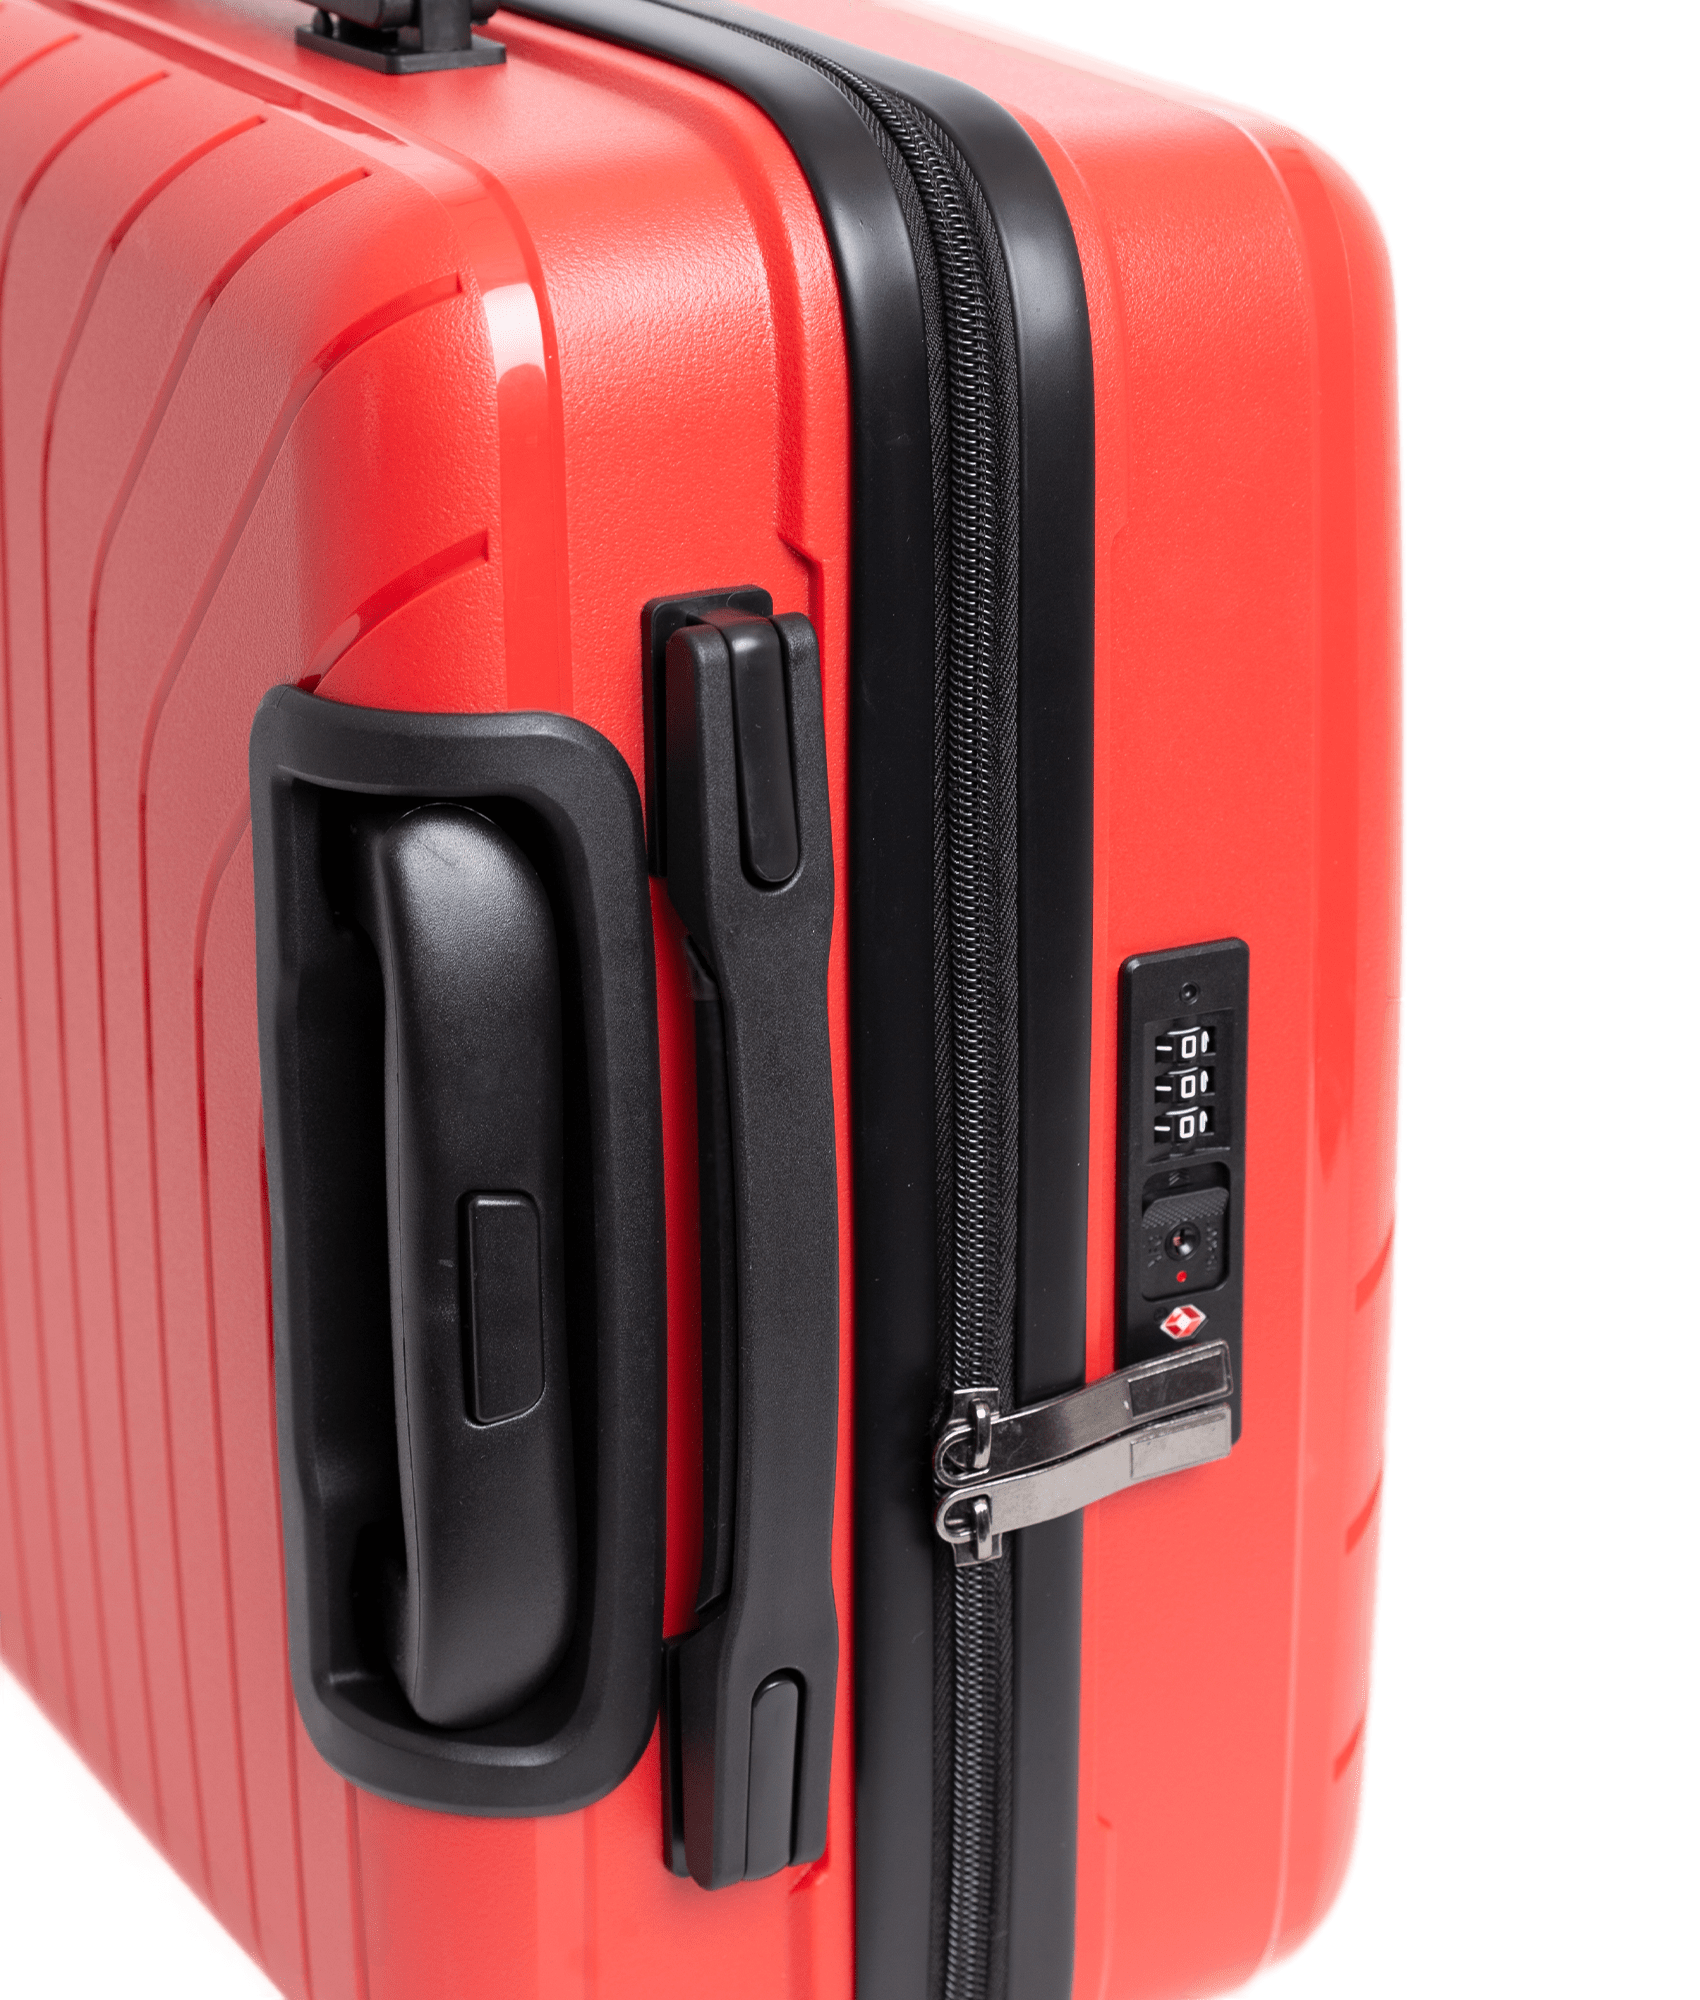 Rød BHC Malaga Mellomstor Koffert Med 4 Hjul 66 cm